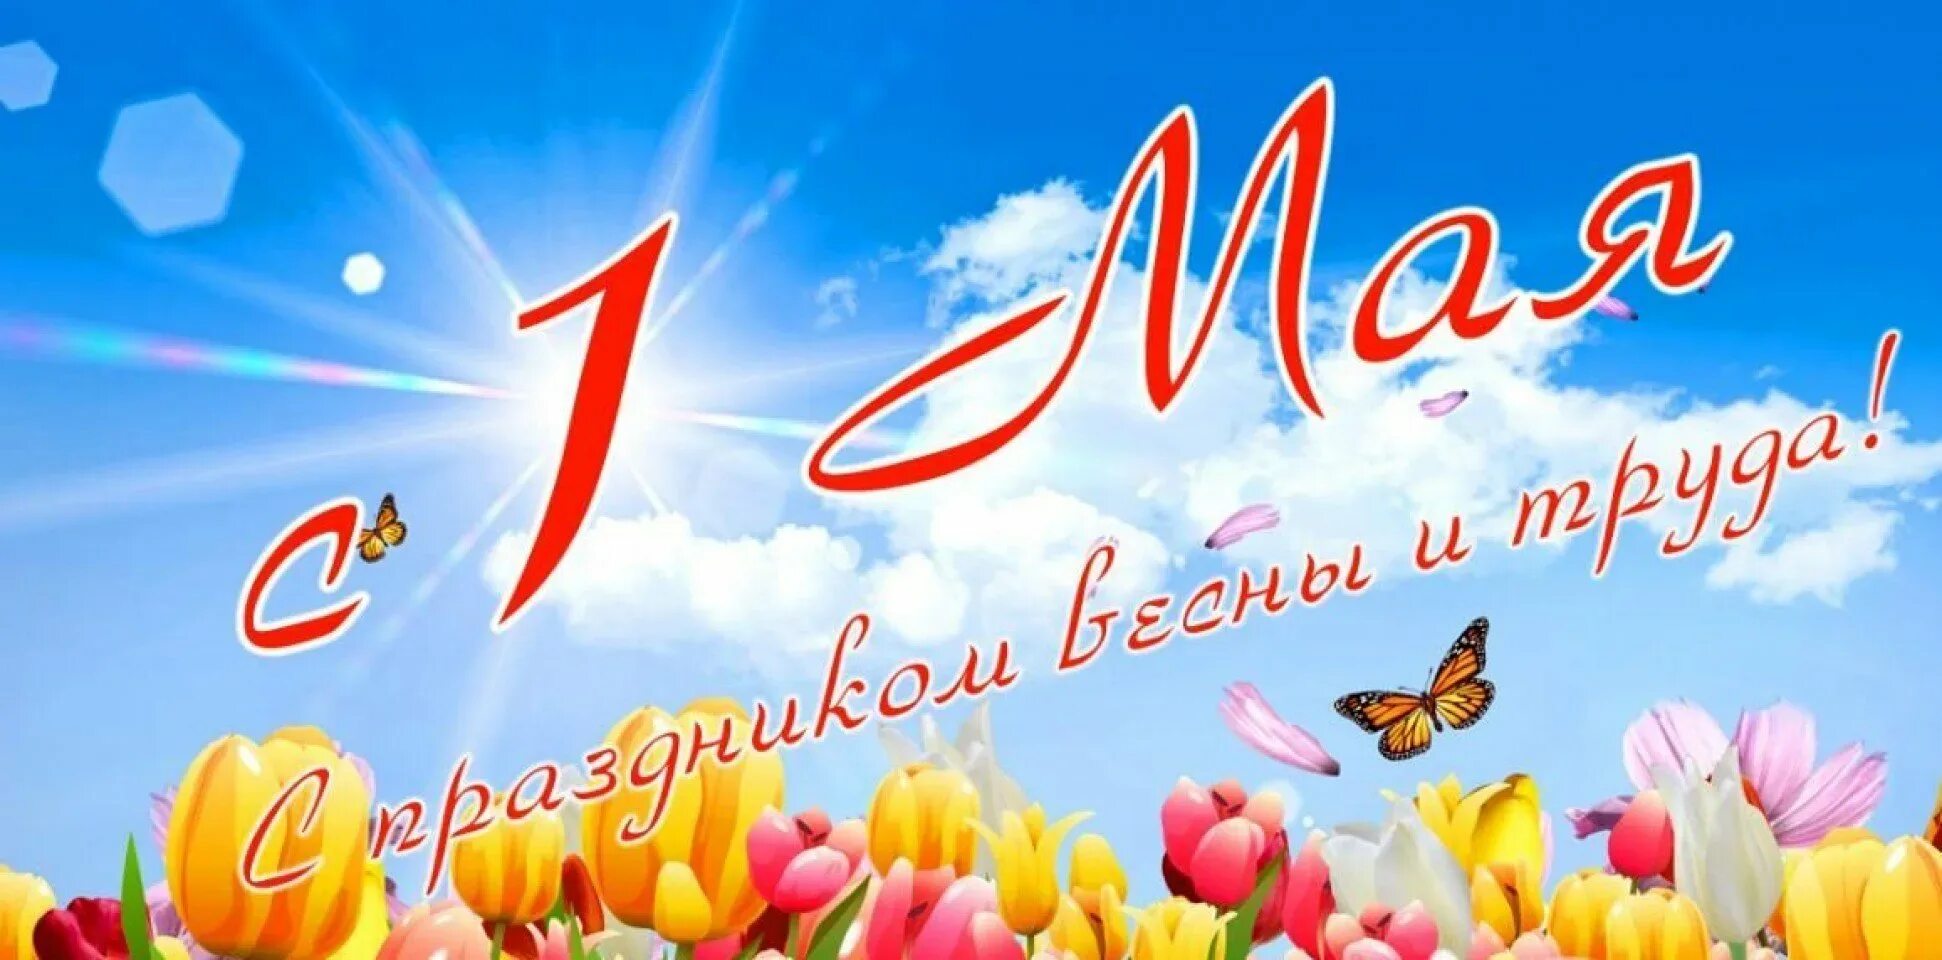 Работа 1 5 мая. 1 Мая. 1 Мая праздник весны и труда. Поздравление с 1 мая. 1 Мая праздник.